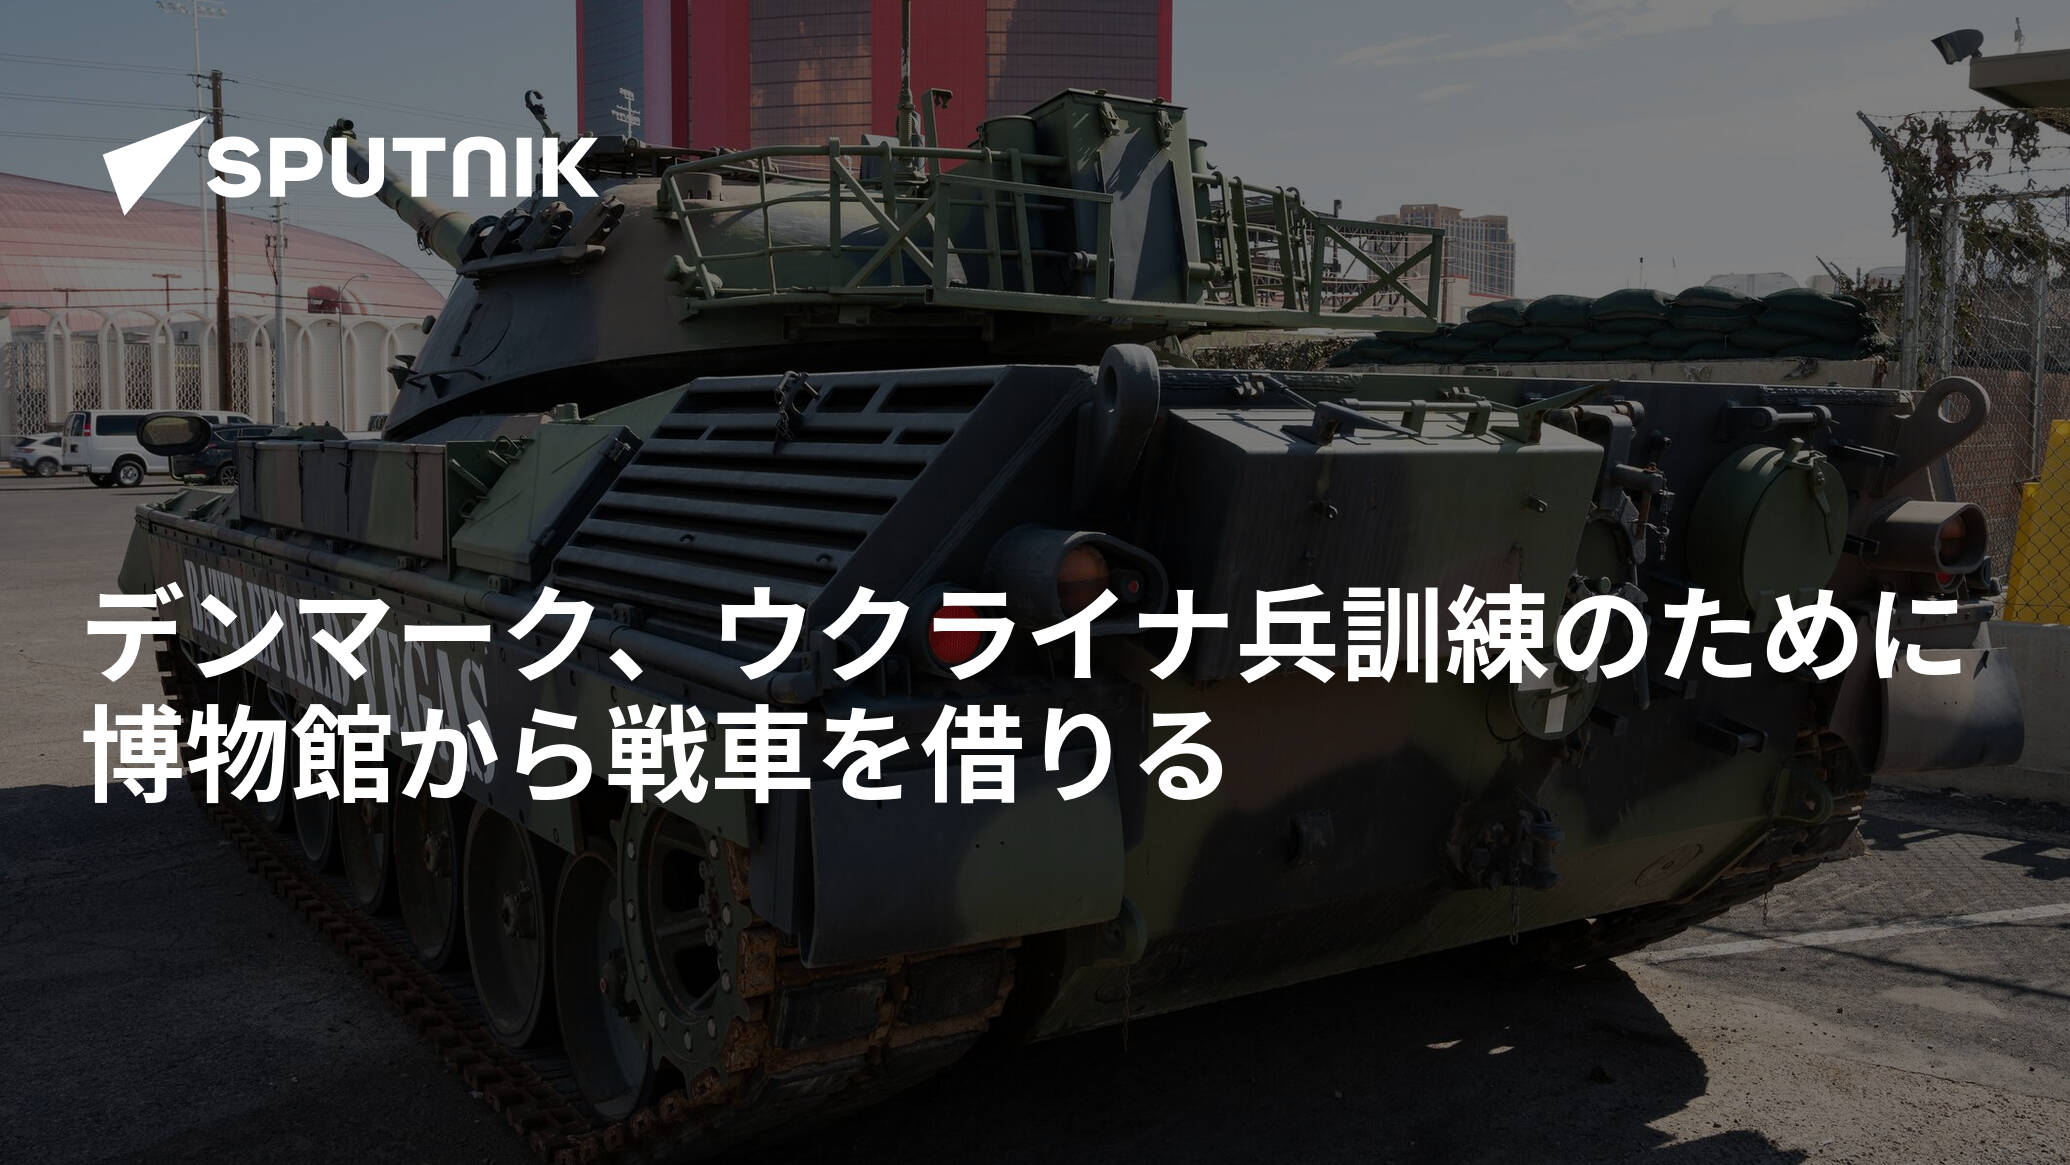 デンマーク、ウクライナ兵訓練のために博物館から戦車を借りる